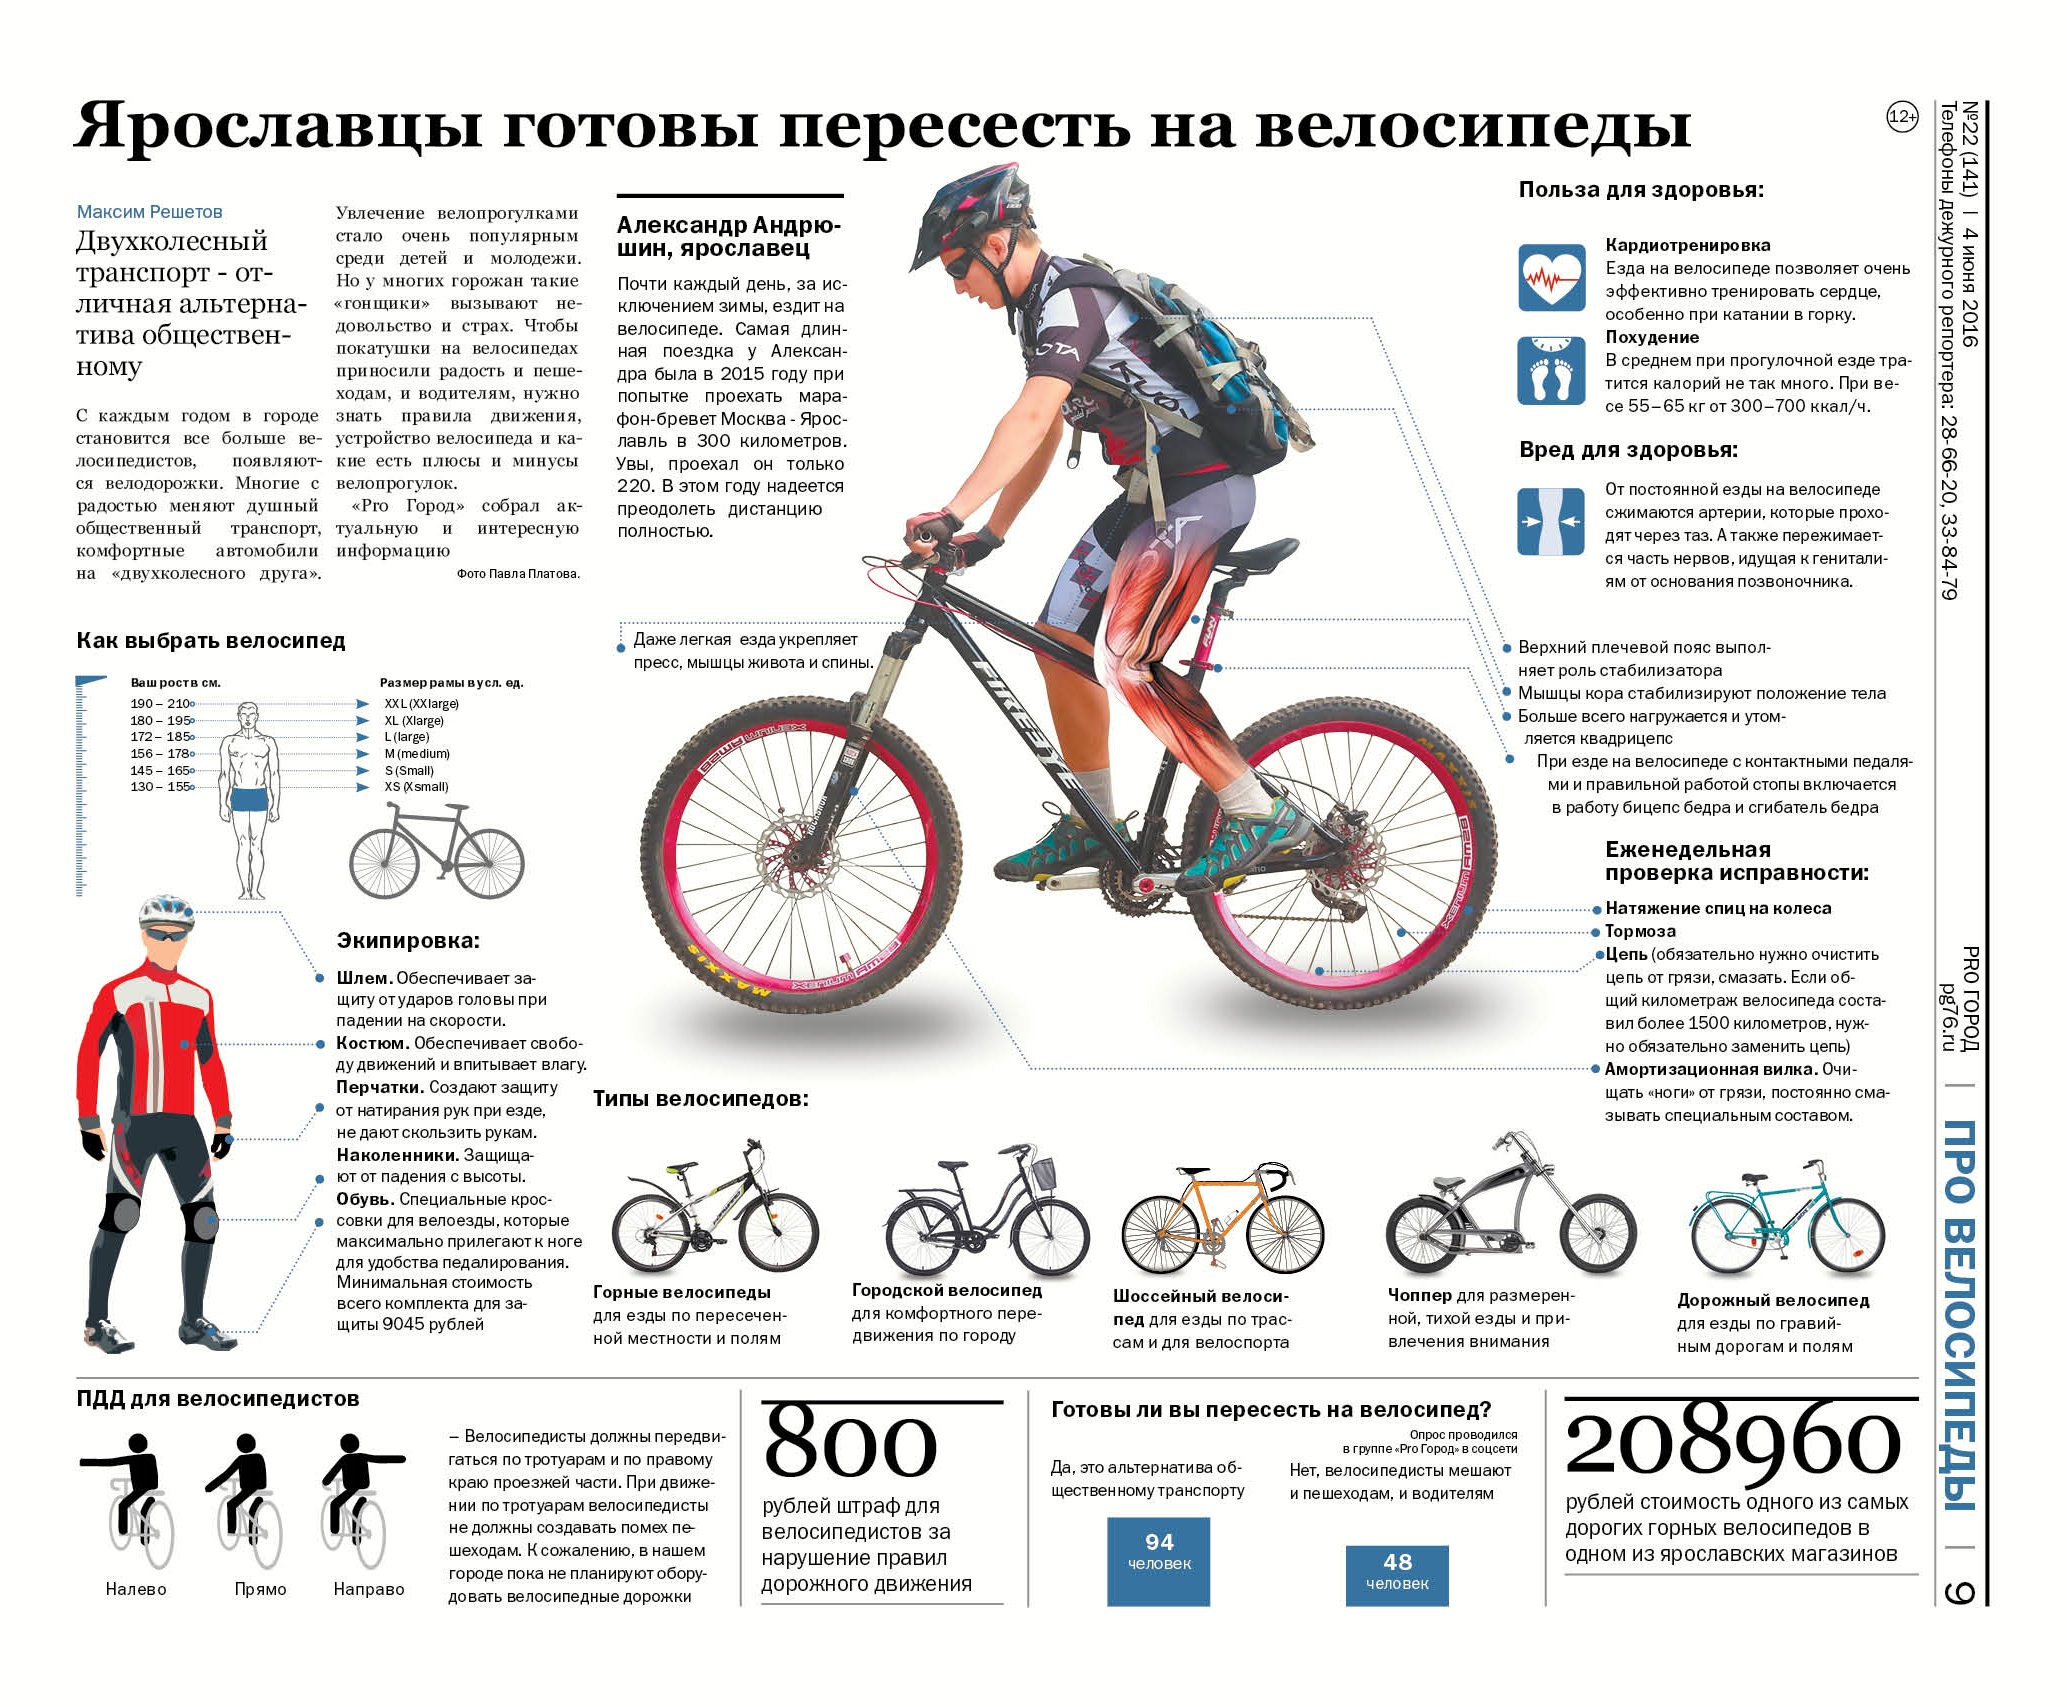 Похудеешь ли катаясь на велосипеде. Инфографика велосипед. Польза велосипеда. Преимущества велосипеда. Инфографика езда на велосипеде.